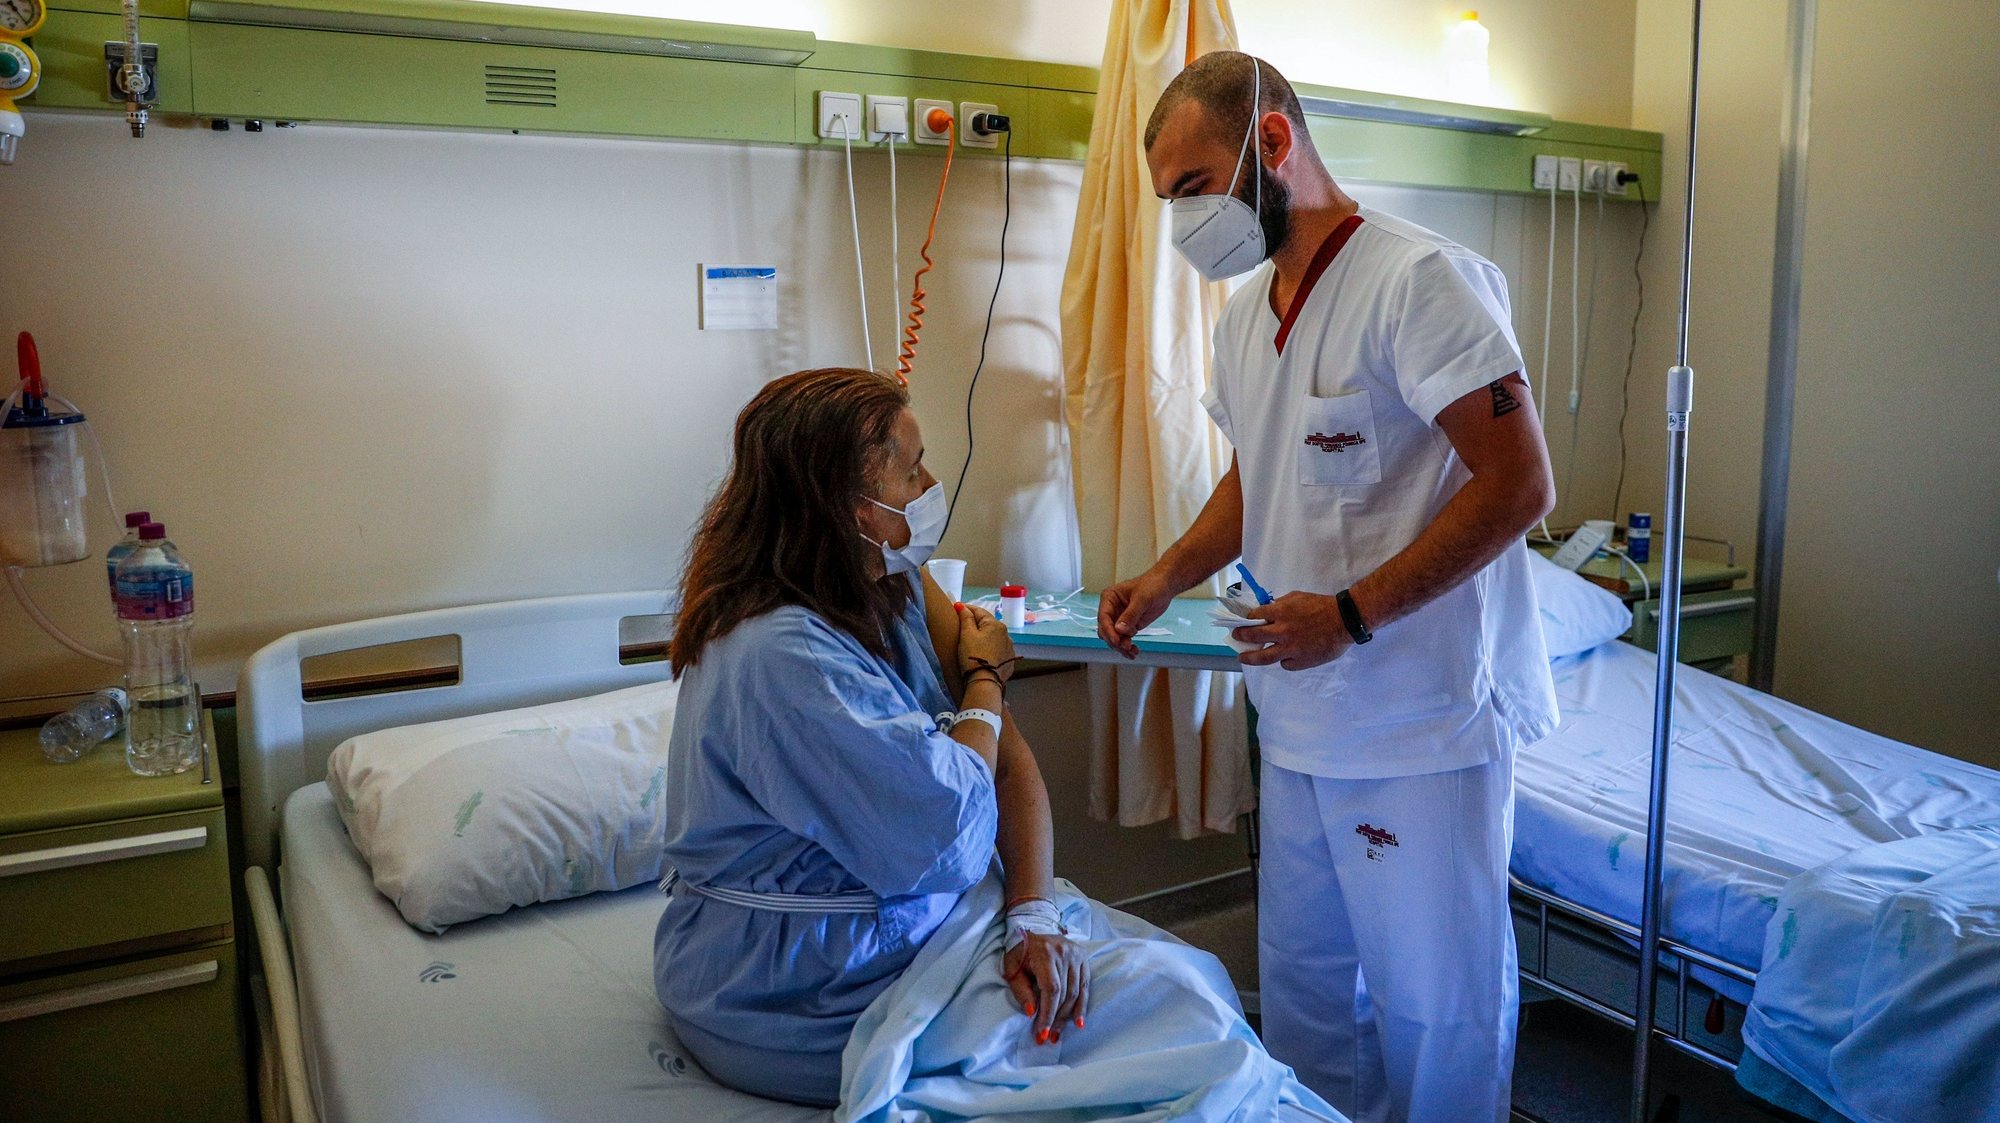 Uma doente internada no hospital Amadora/Sintra, é vacinada contra a covid-19, Amadora, 24 de junho de 2021. ANTÓNIO COTRIM/LUSA